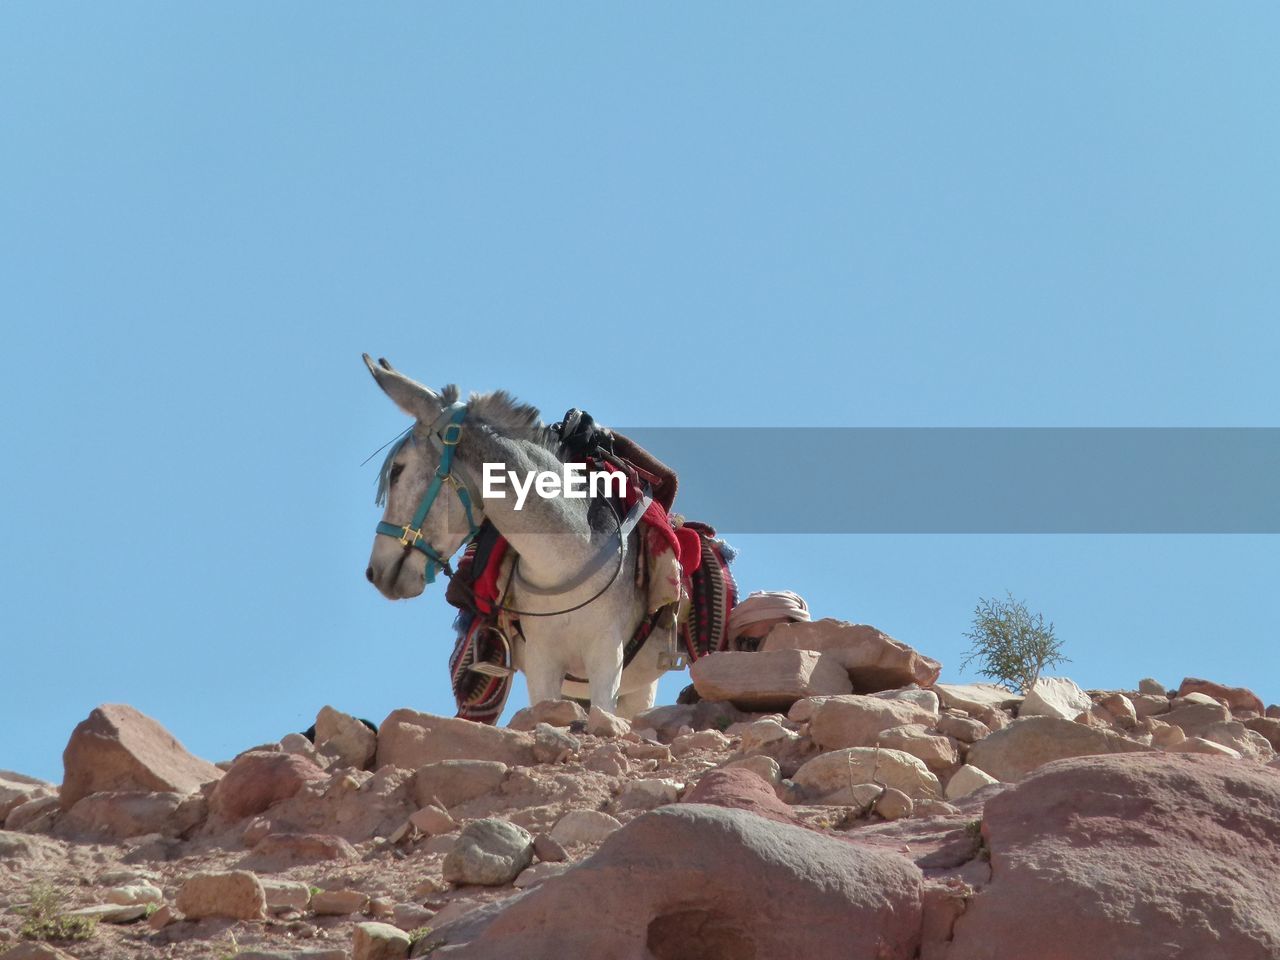 Bedouin donkey 